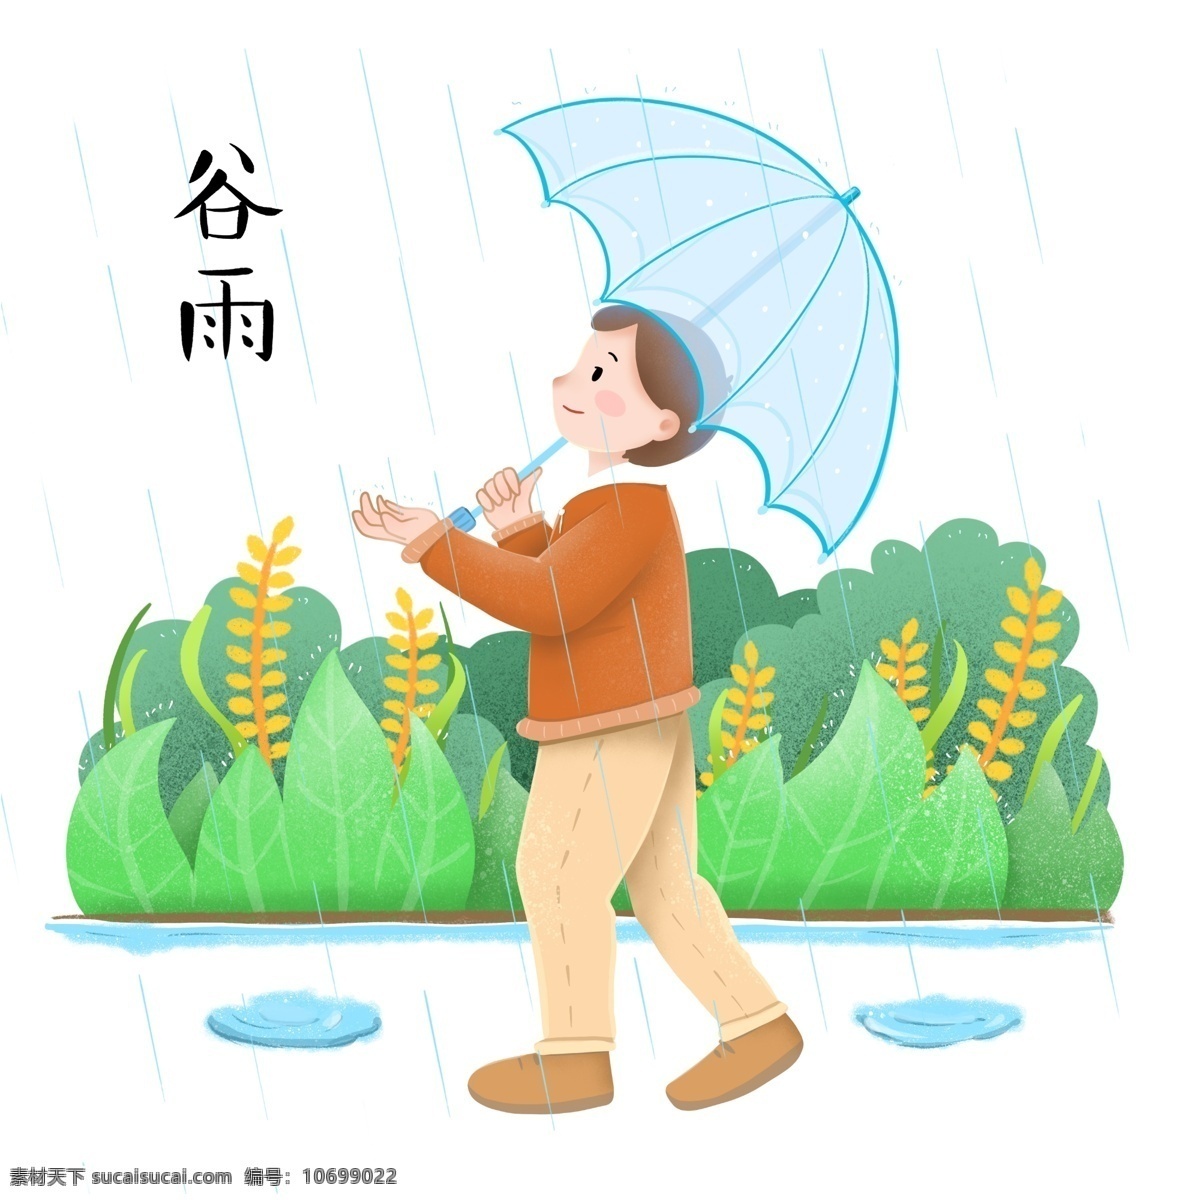 谷雨 雨 中 漫步 小女孩 插画 女孩 谷雨插画 下雨天气 绿色的雨伞 飞翔的小燕子 蓝色的小河 卡通插画